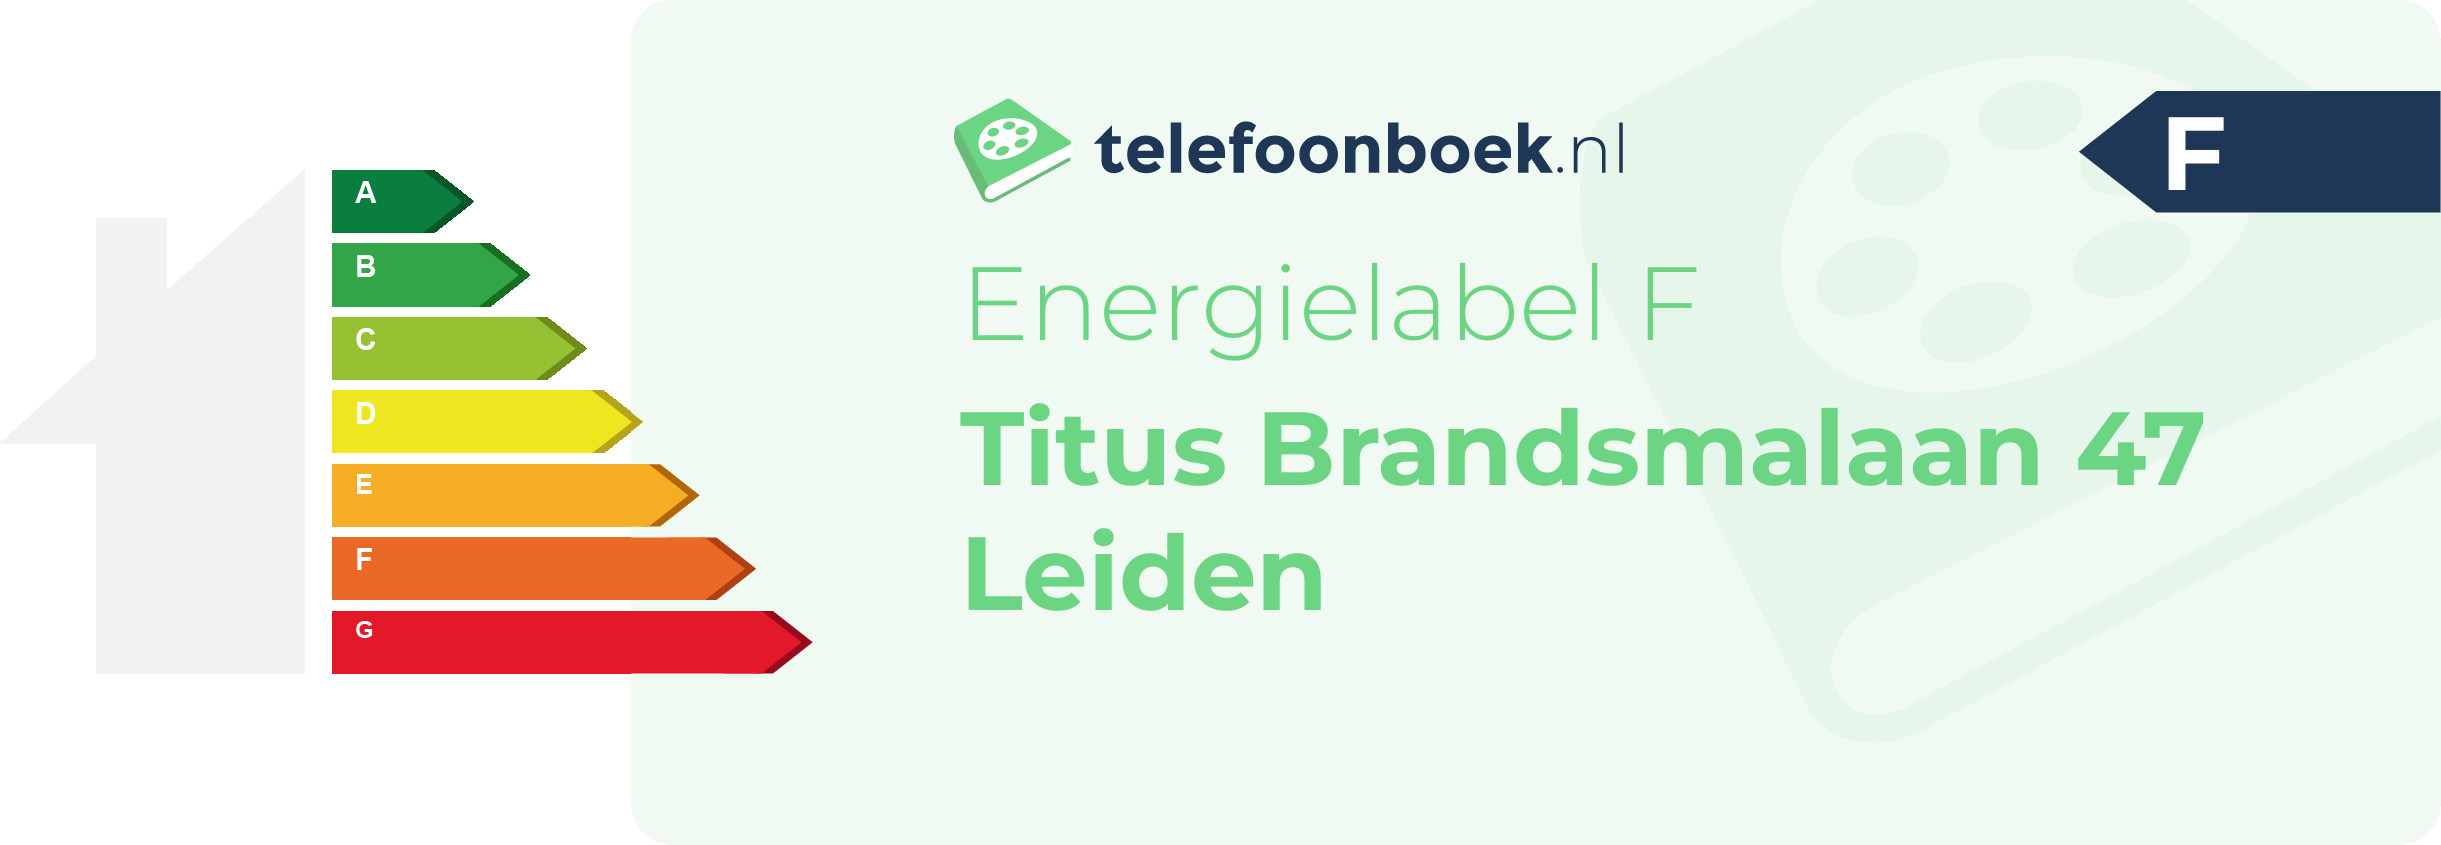 Energielabel Titus Brandsmalaan 47 Leiden